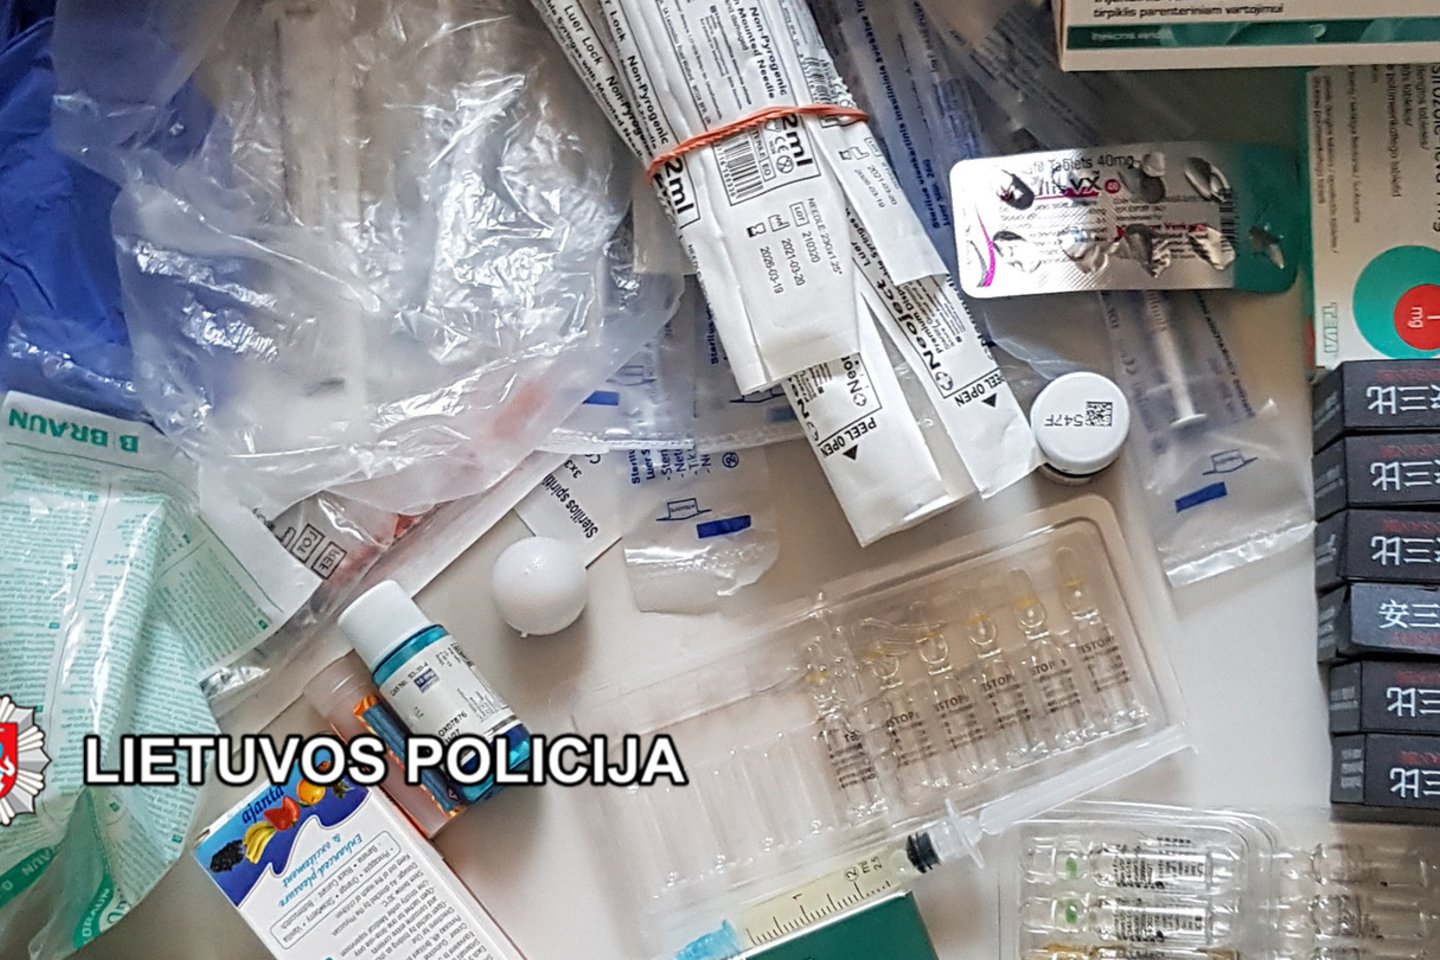  Klaipėdoje atliekamas tyrimas dėl dokumentų klastojimo: PGR testų ir vakcinavimo nuo COVID-19.<br> Klaipėdos apskrities VPK nuotr.